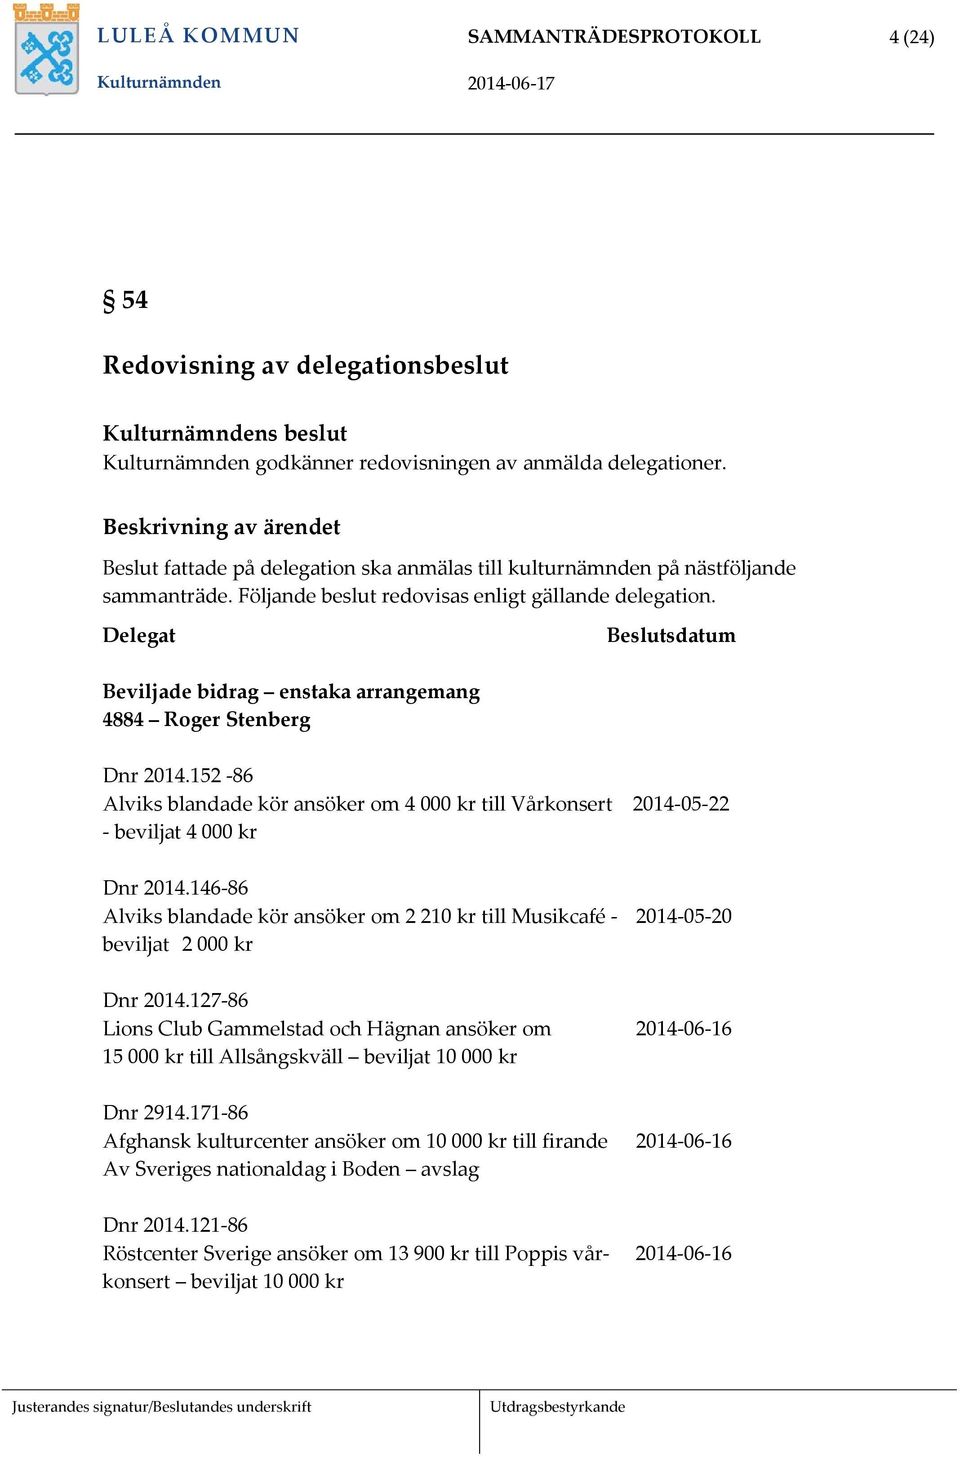 Delegat Beslutsdatum Beviljade bidrag enstaka arrangemang 4884 Roger Stenberg Dnr 2014.152-86 Alviks blandade kör ansöker om 4 000 kr till Vårkonsert 2014-05-22 - beviljat 4 000 kr Dnr 2014.